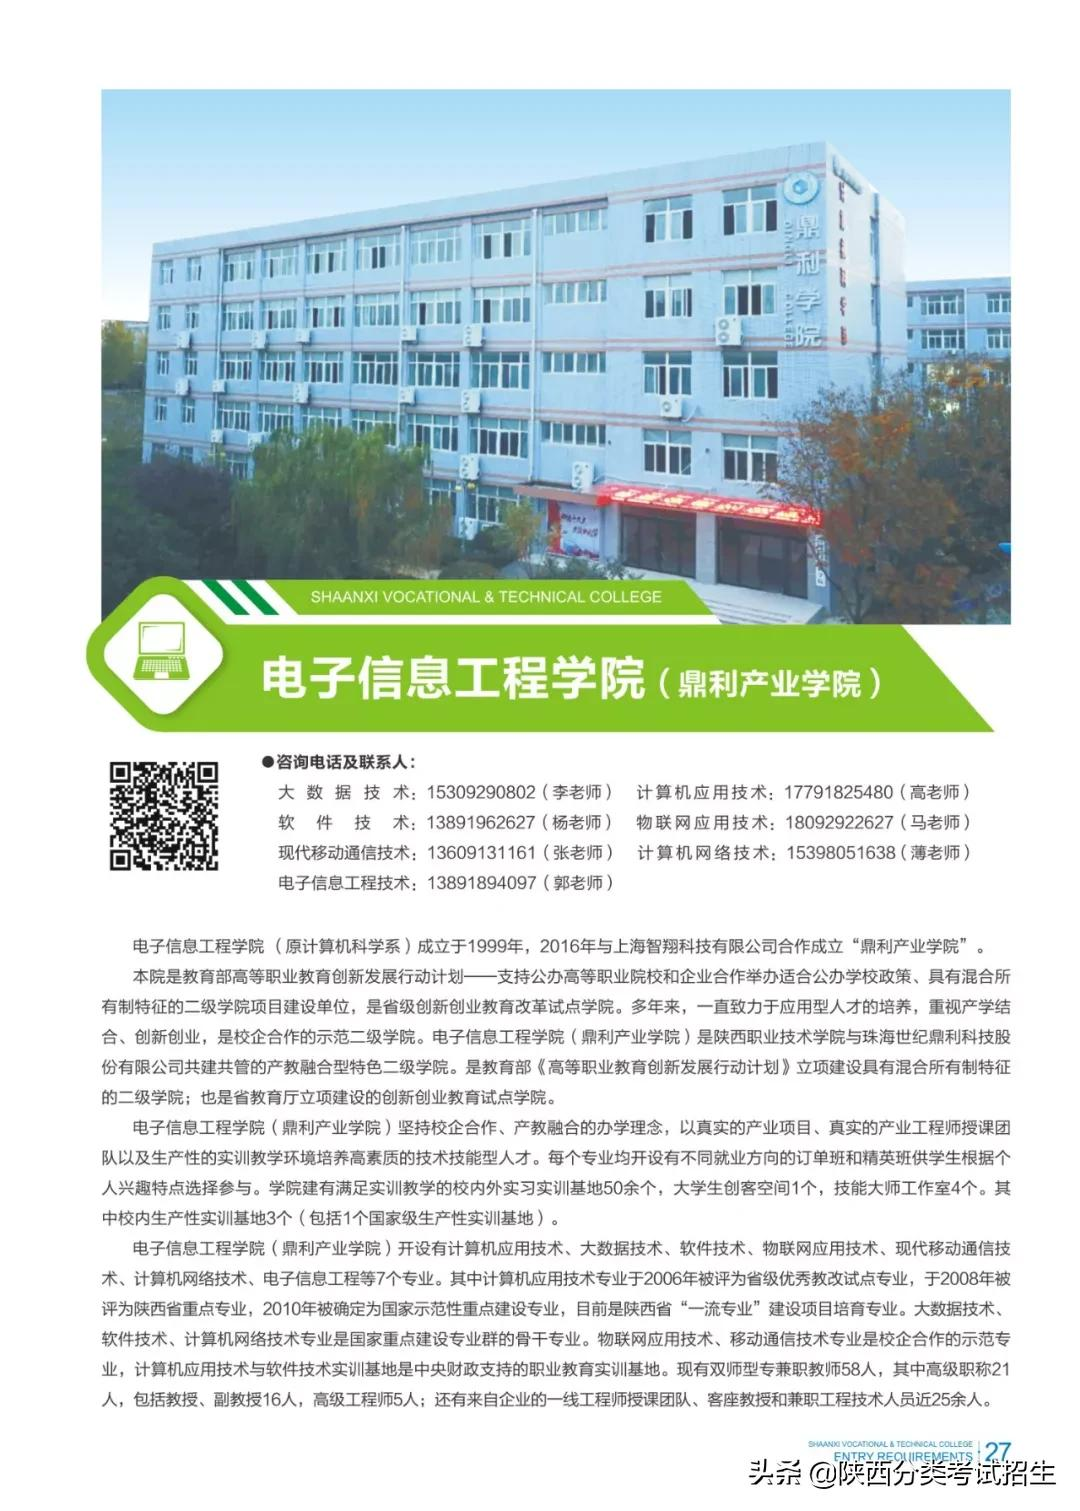 「招生简章」陕西职业技术学院2022年单独考试招生简章